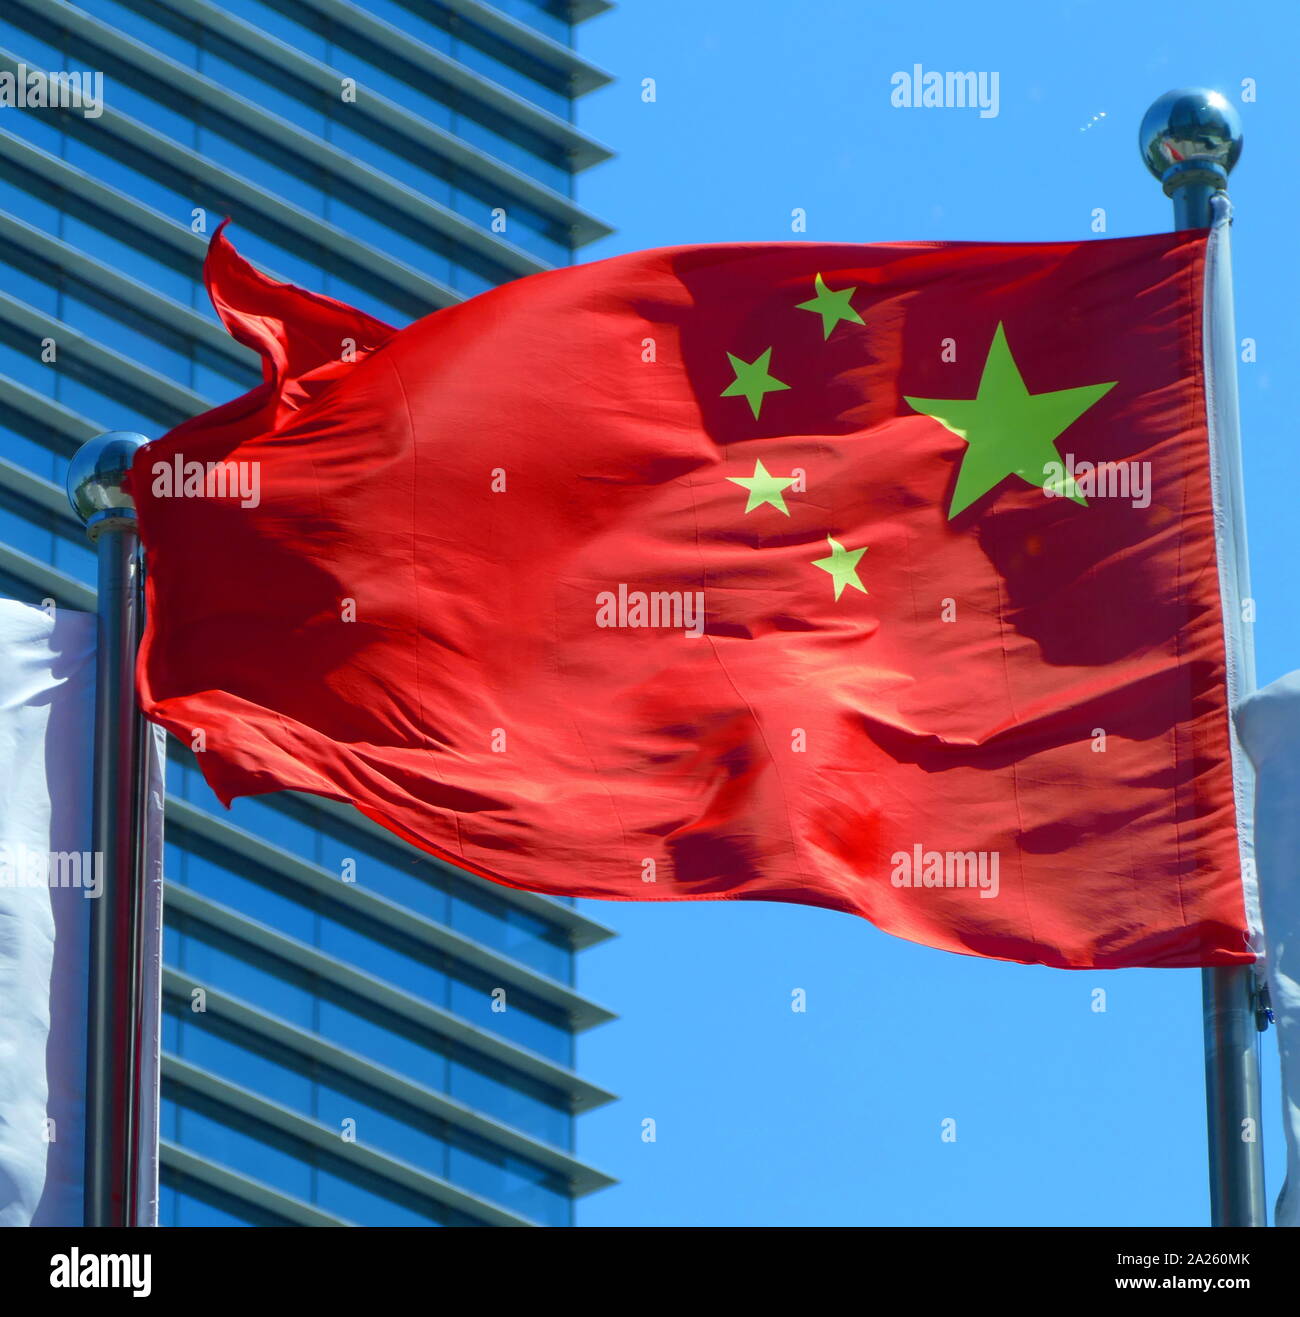 Die Flagge von China, verfügt über einen großen Star, mit vier kleineren Sterne. Das Rot steht für die kommunistische Revolution; die fünf Sterne und ihre Beziehung darstellen. die Einheit des Chinesischen Volkes unter der Führung der Kommunistischen Partei Chinas (CPC). Die erste Fahne wurde von der Volksbefreiungsarmee (PLA) auf einer Stange mit Blick auf Pekings Platz des Himmlischen Friedens am 1. Oktober 1949 gehisst, in einer Zeremonie die Bekanntgabe der Gründung der Volksrepublik China. Stockfoto